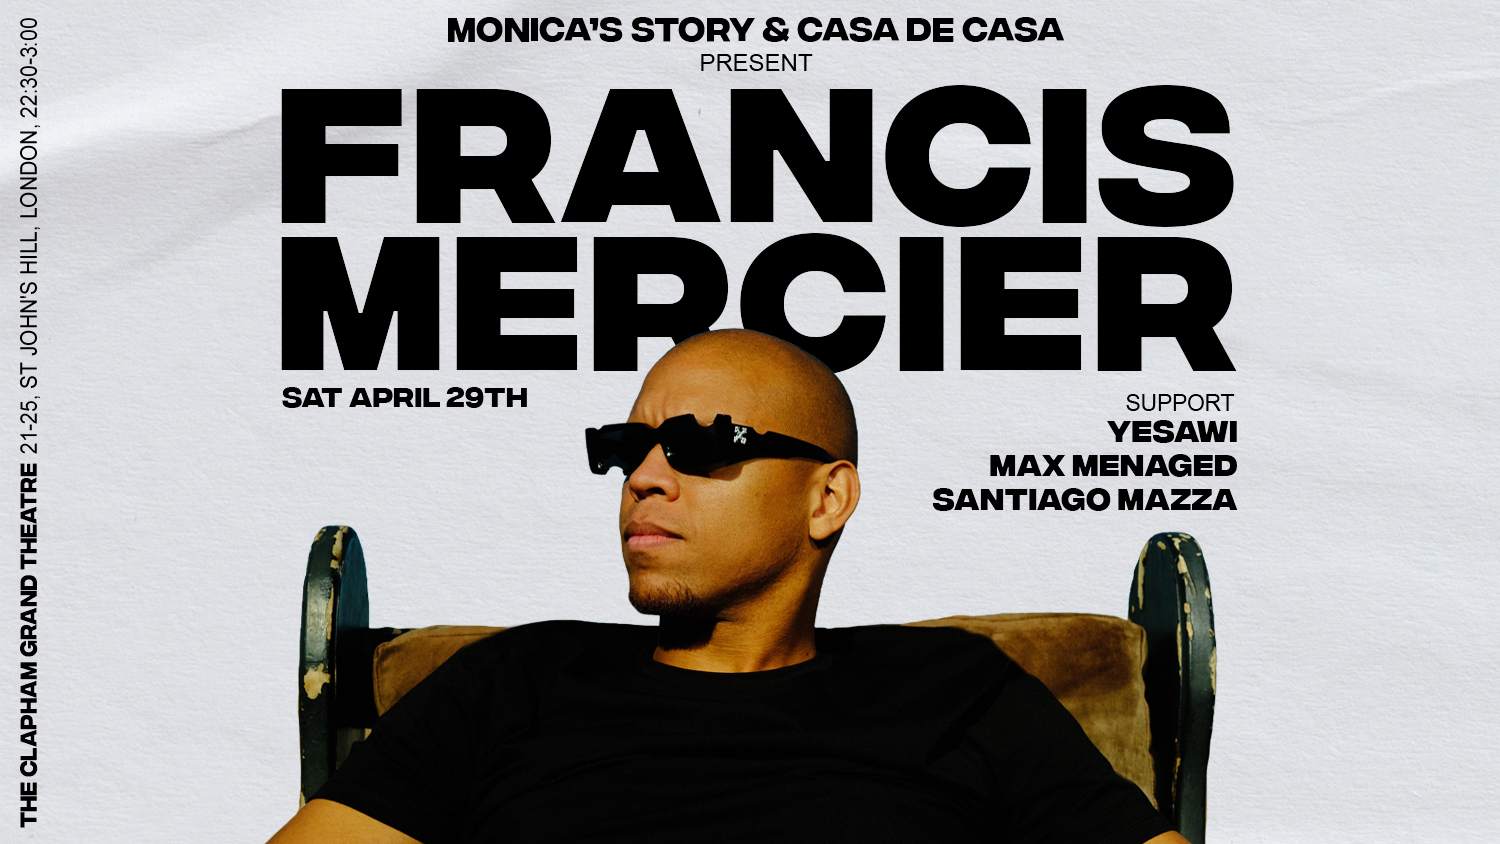 Casa de Casa & Monica's Story present - Francis Mercier - Flyer front